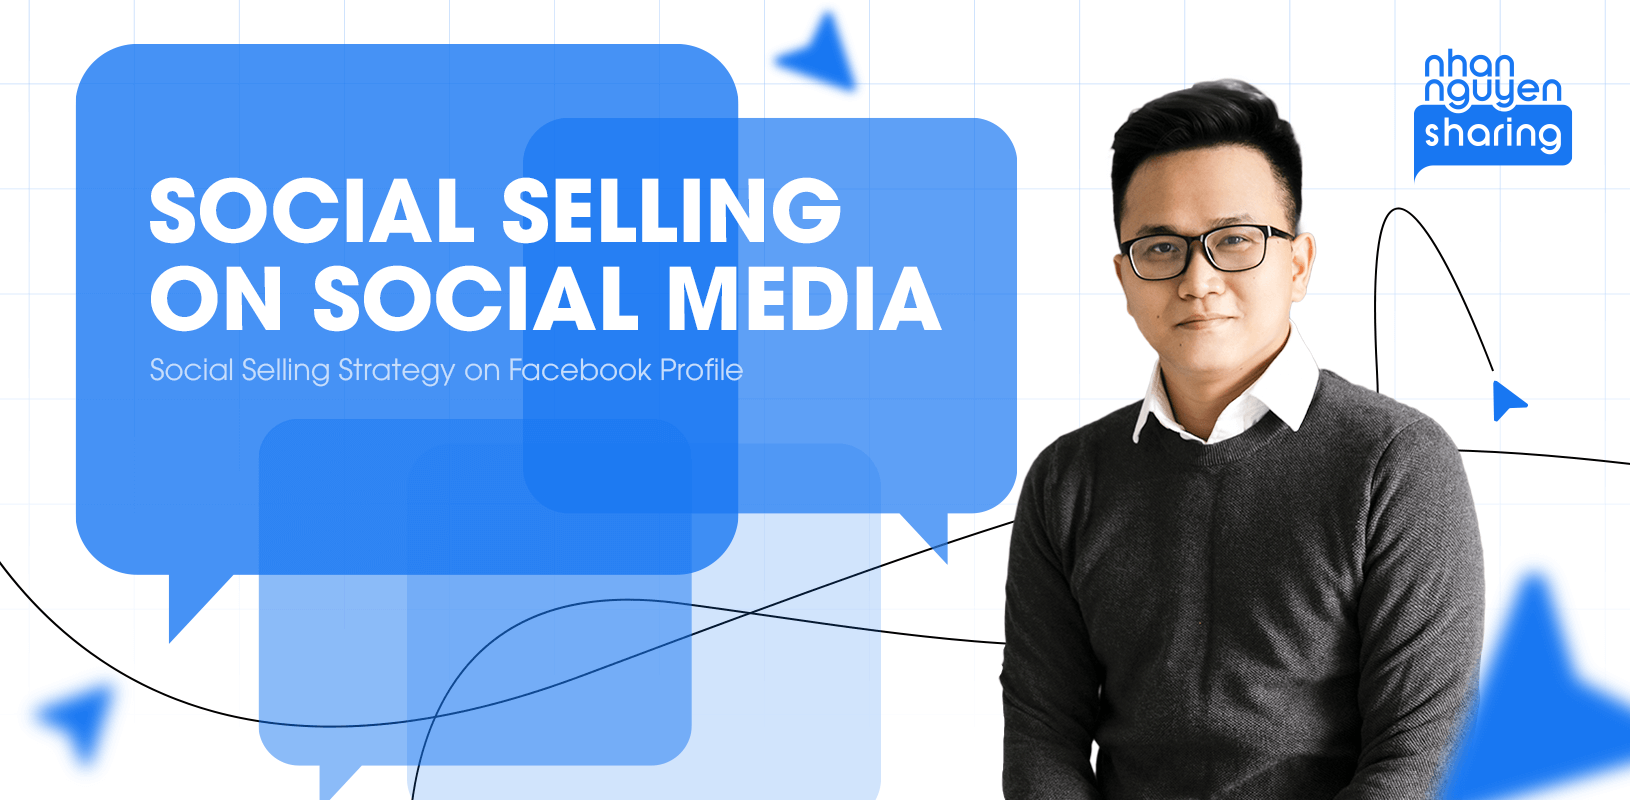 Social selling on social media